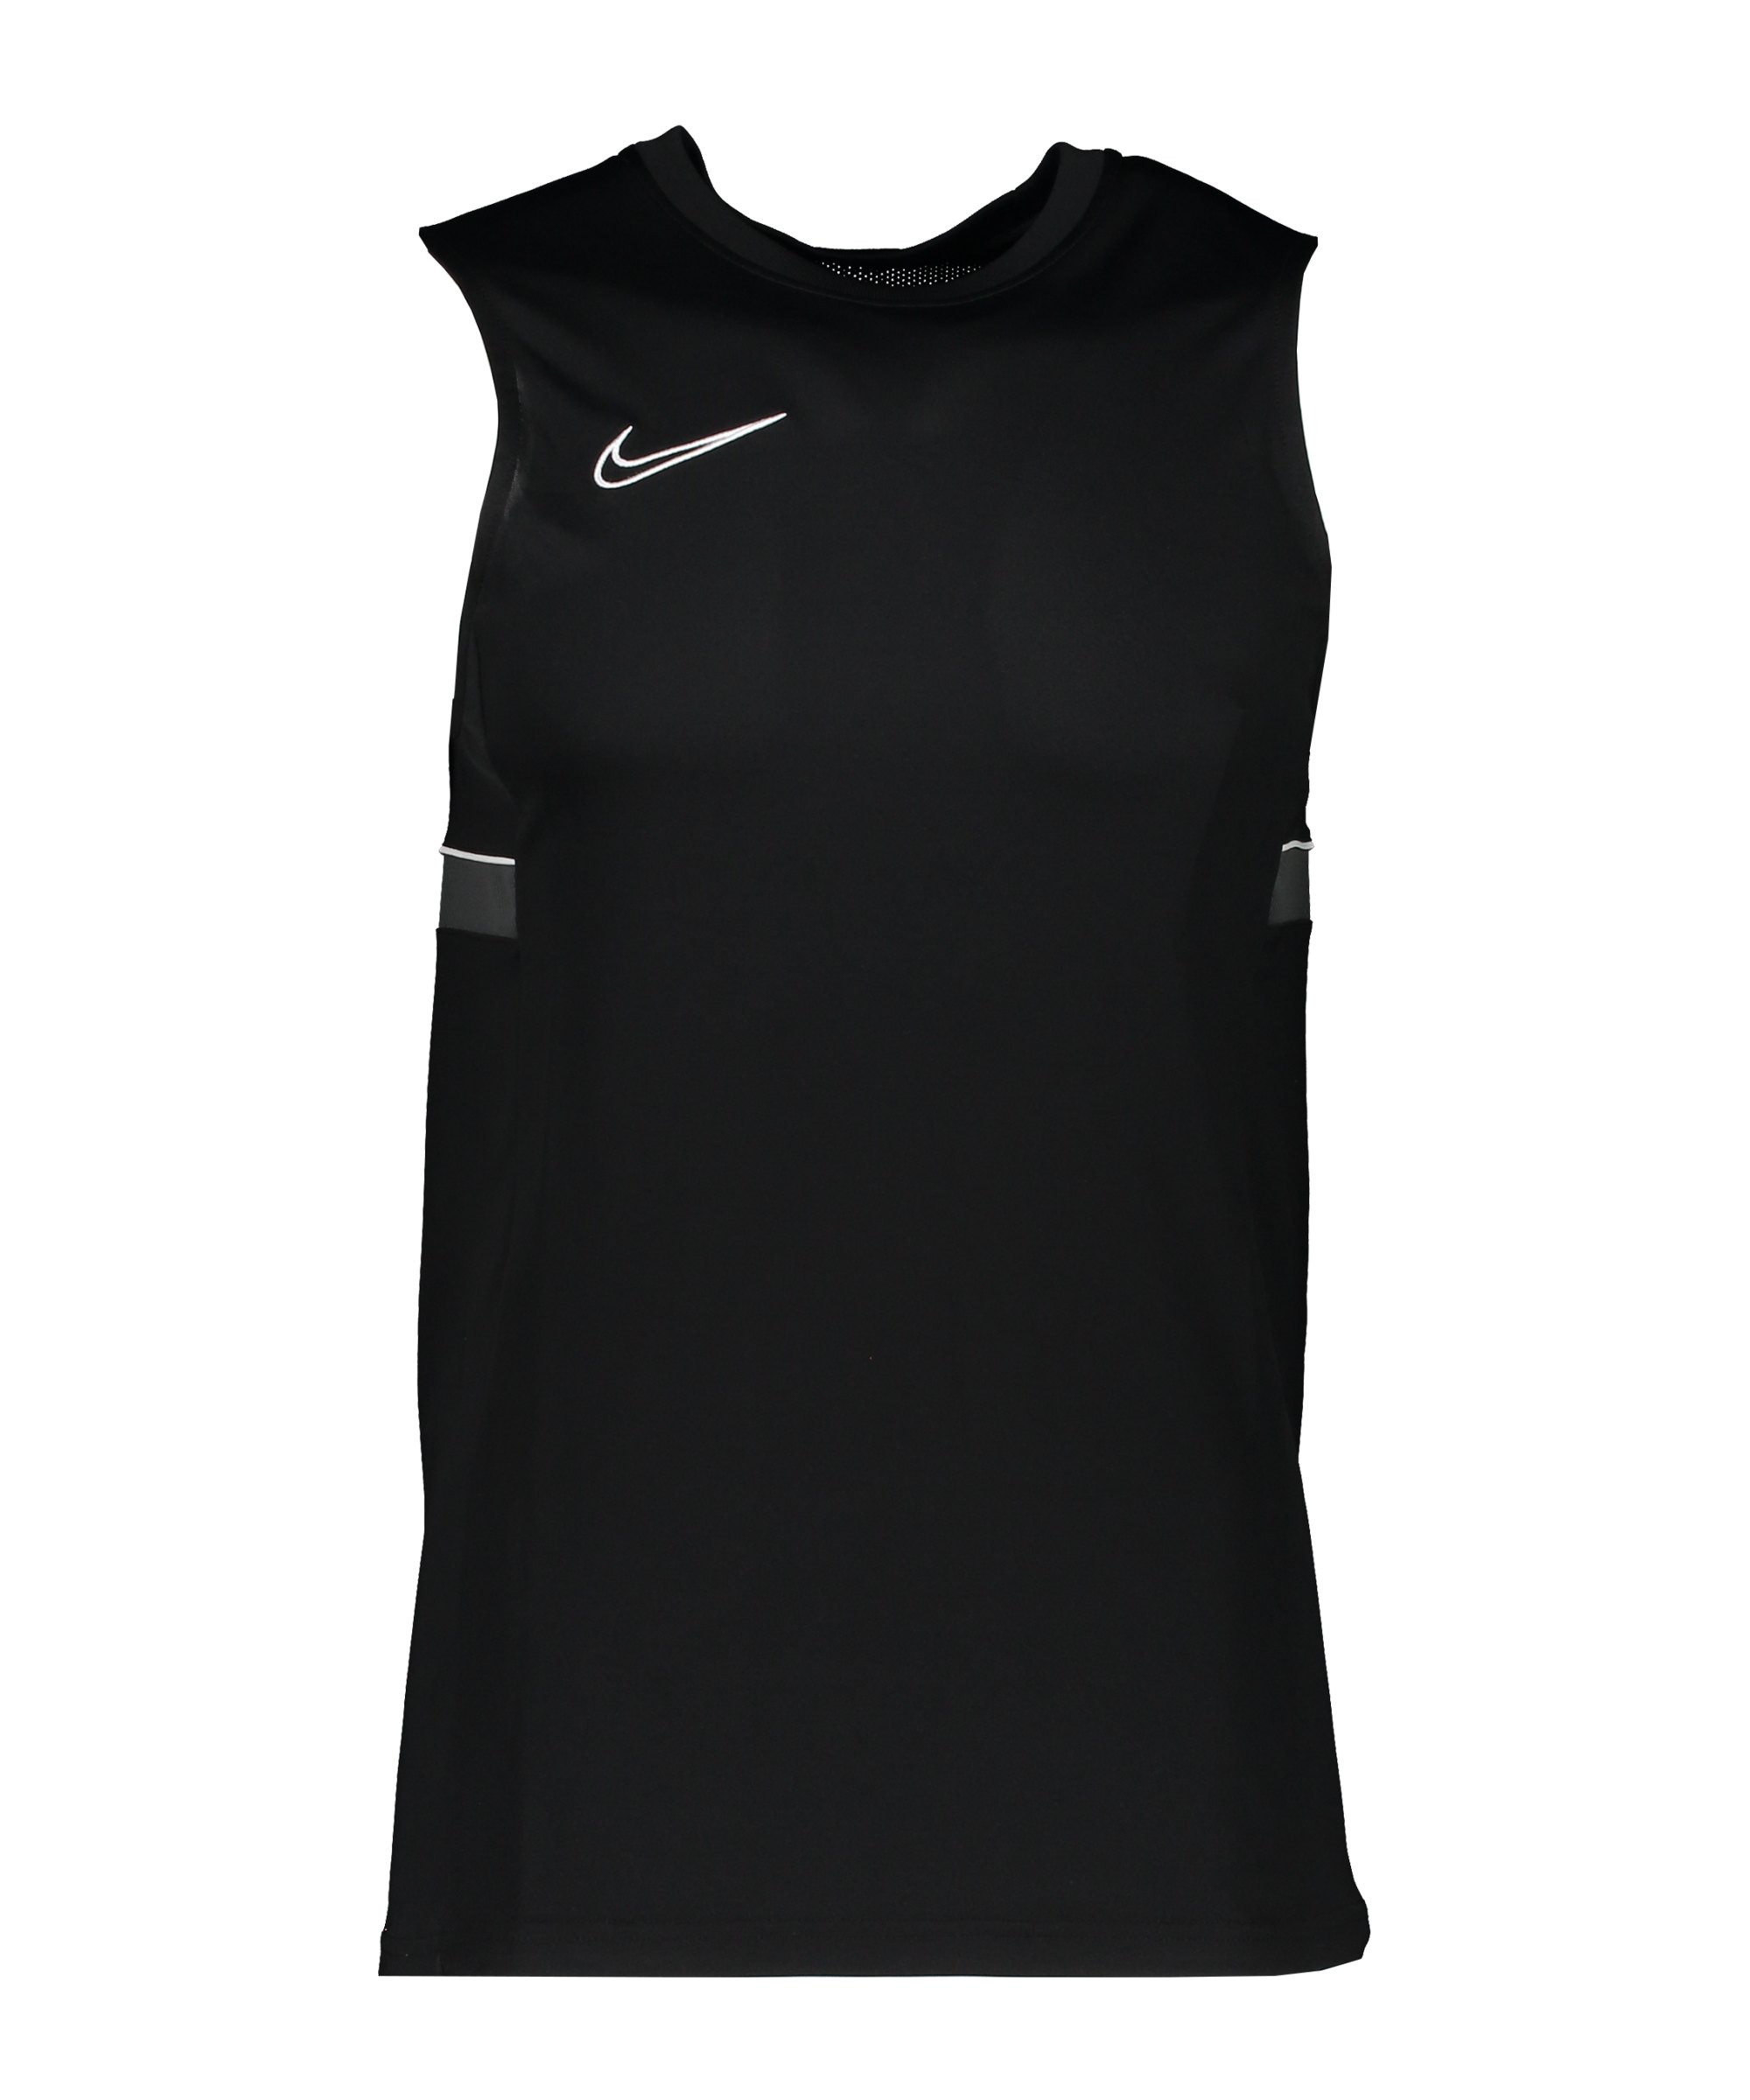 Nike Academy 21 Tanktop Schwarz Weiss F014 - schwarz